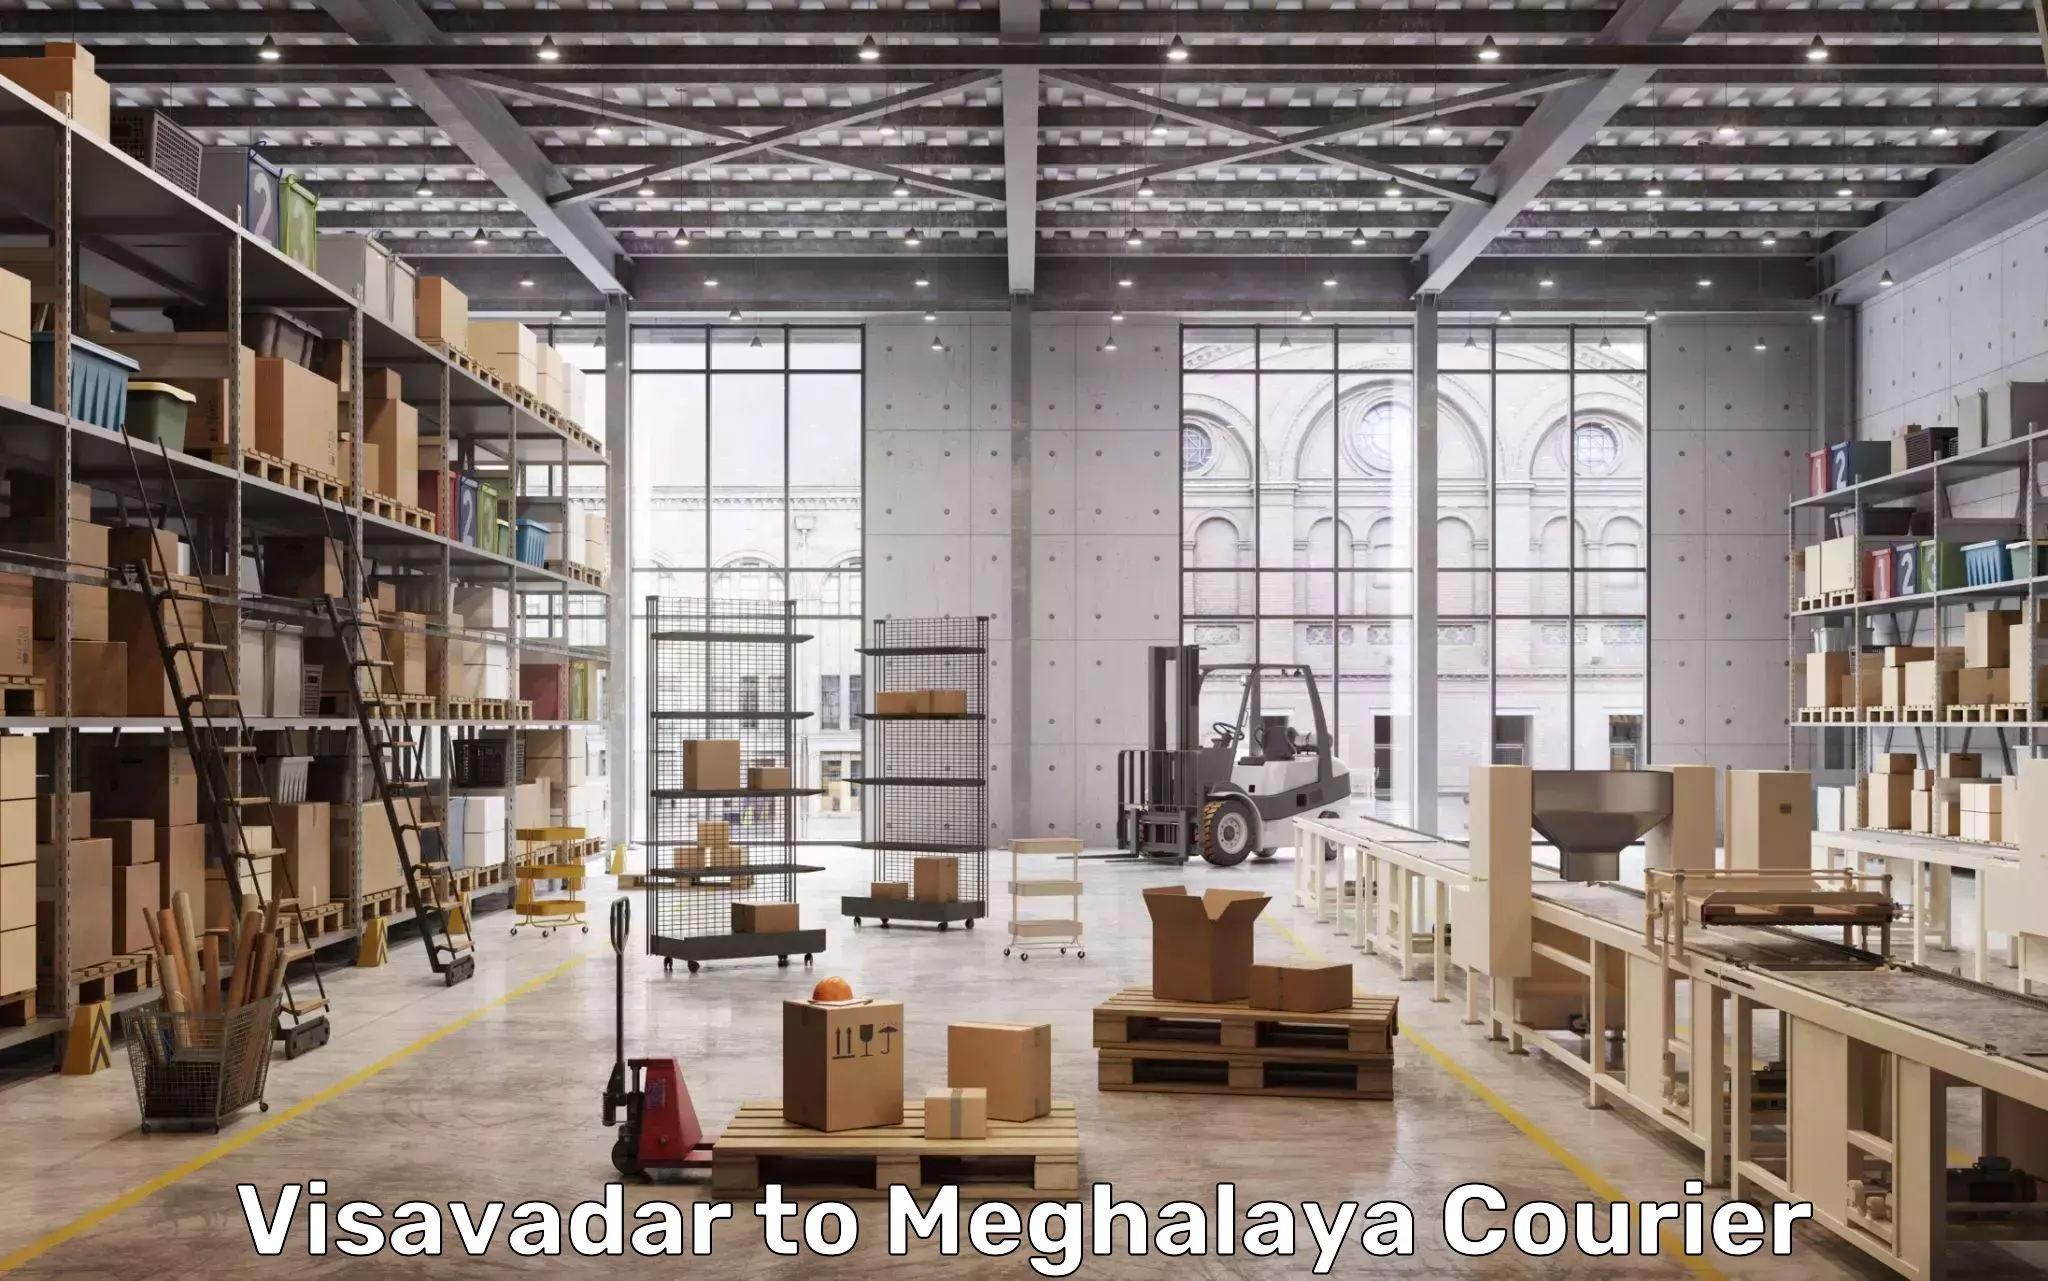 Baggage transport updates Visavadar to Meghalaya